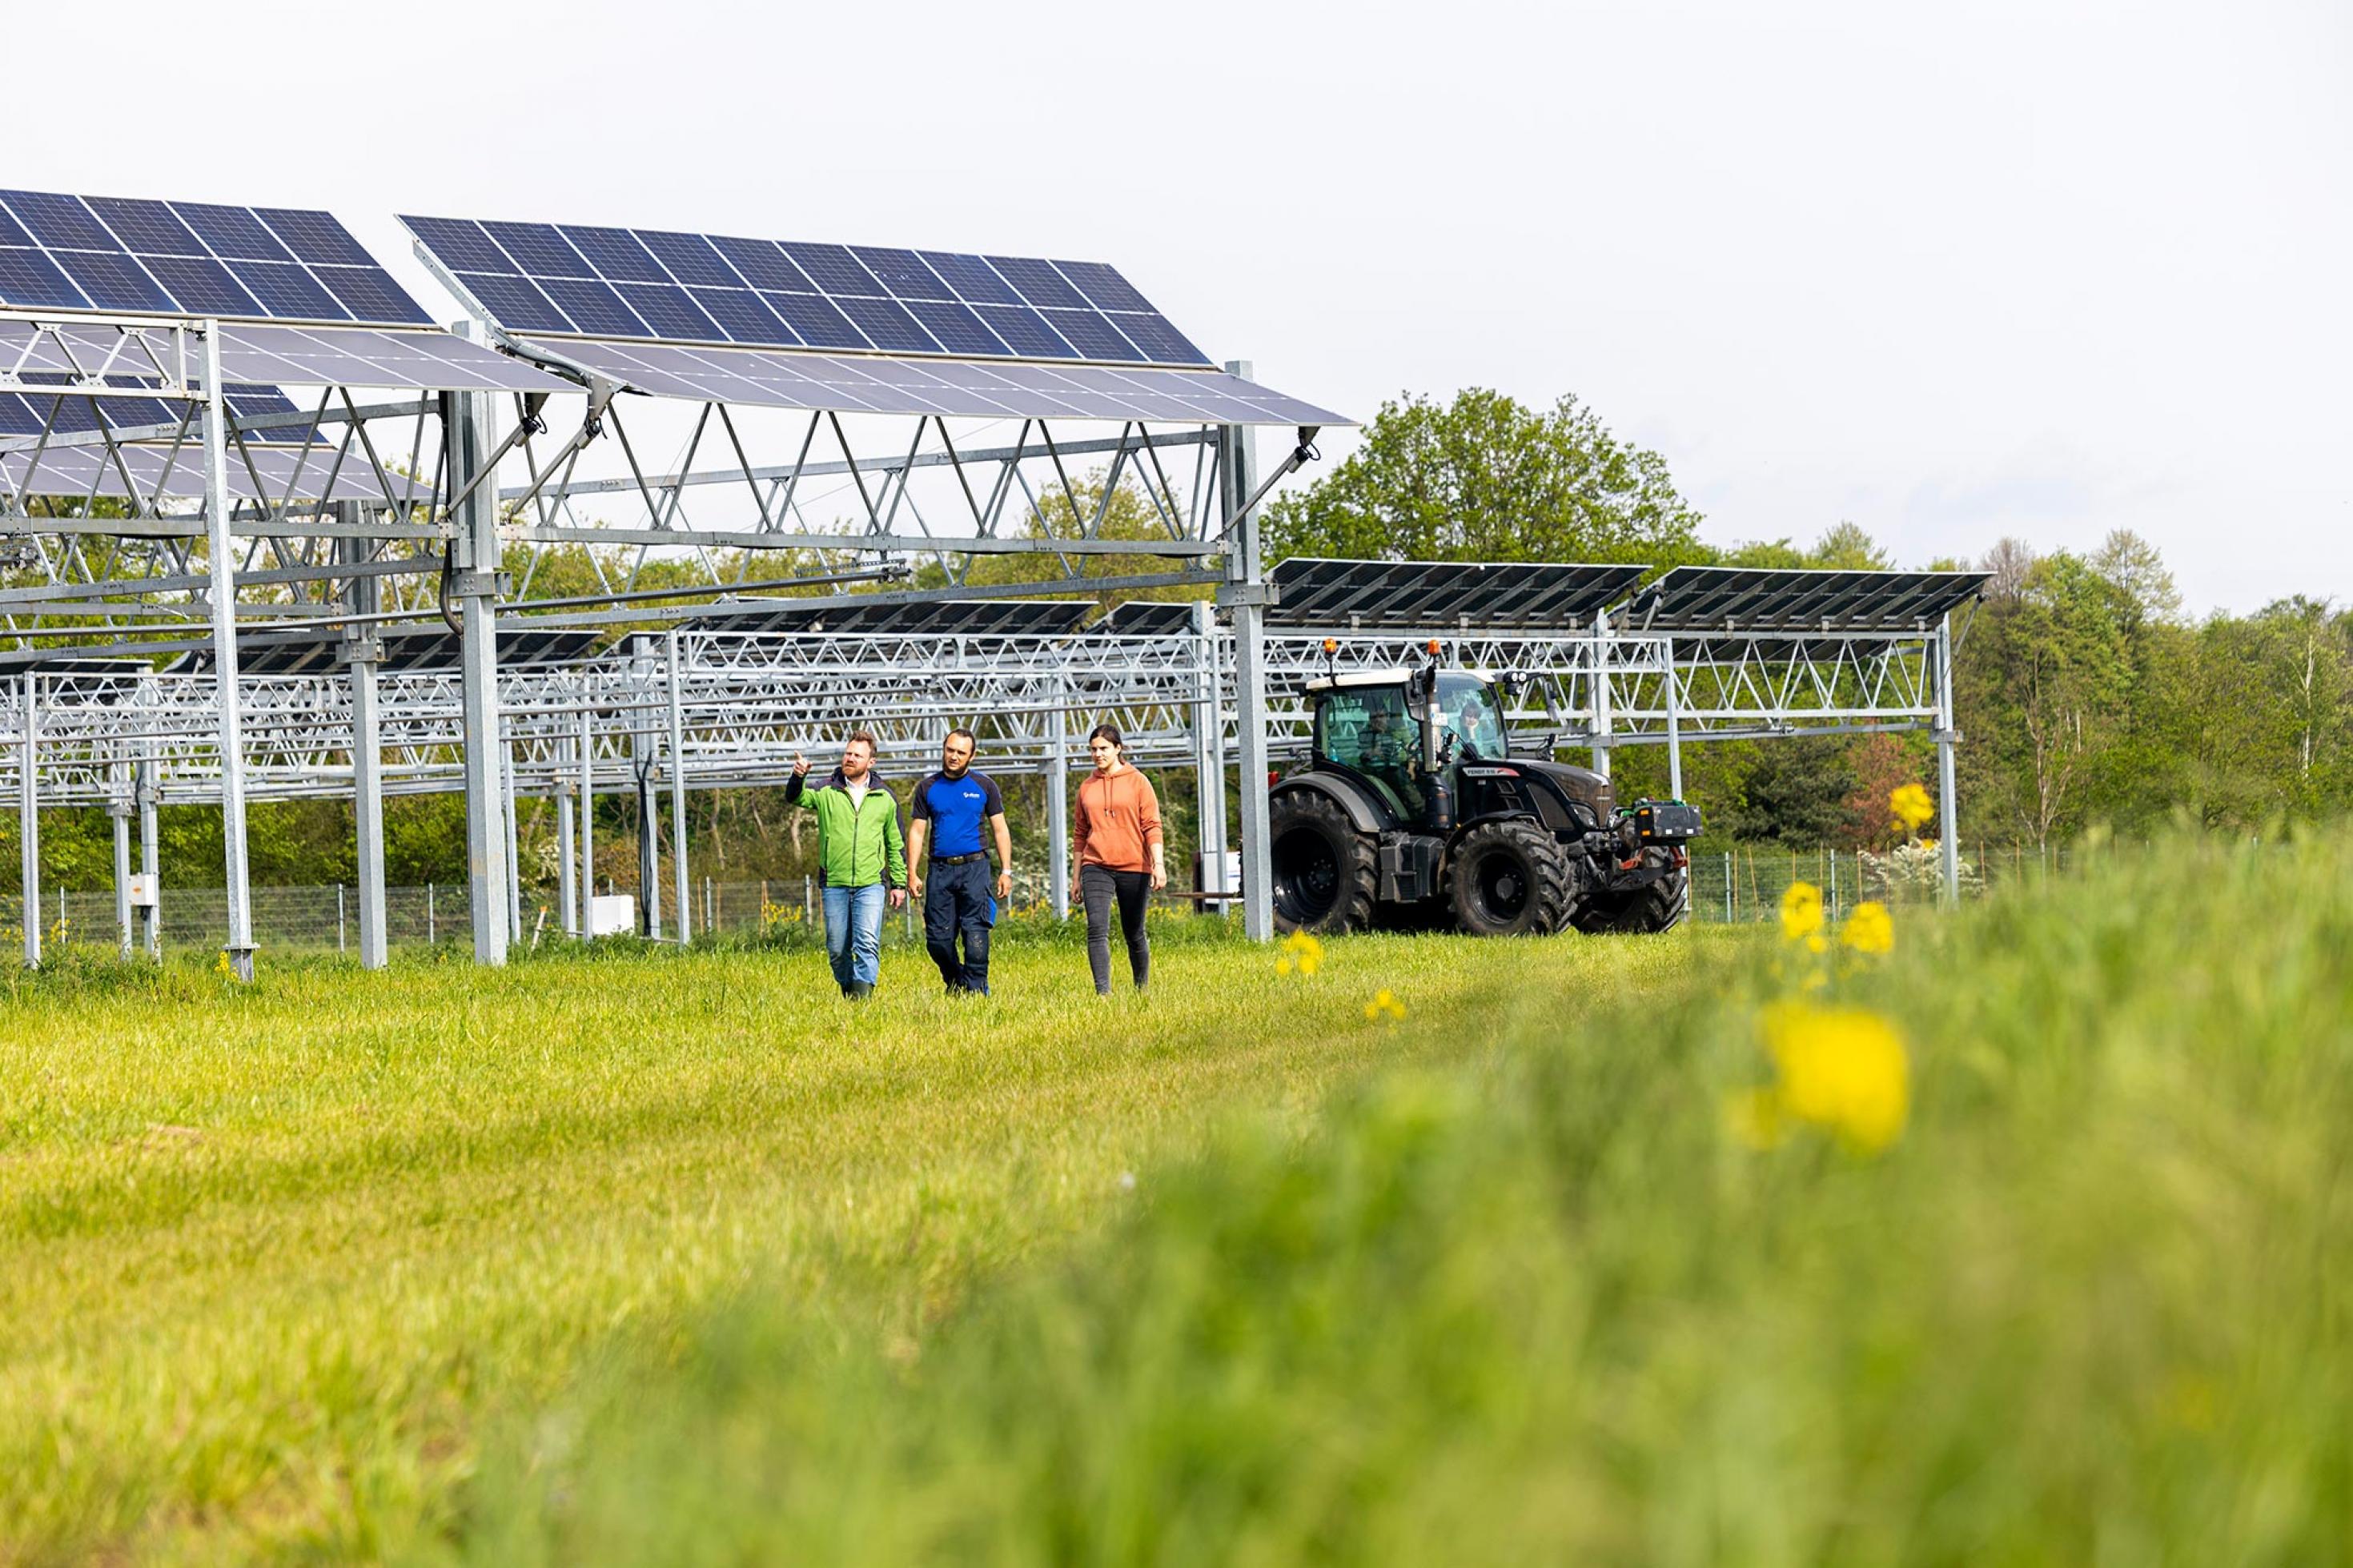 Drei Menschen laufen über ein Feld, auf dem auf Ständeranlagen Photovoltaikmodule aufgebaut sind. Im Hintergrund steht ein Traktor.